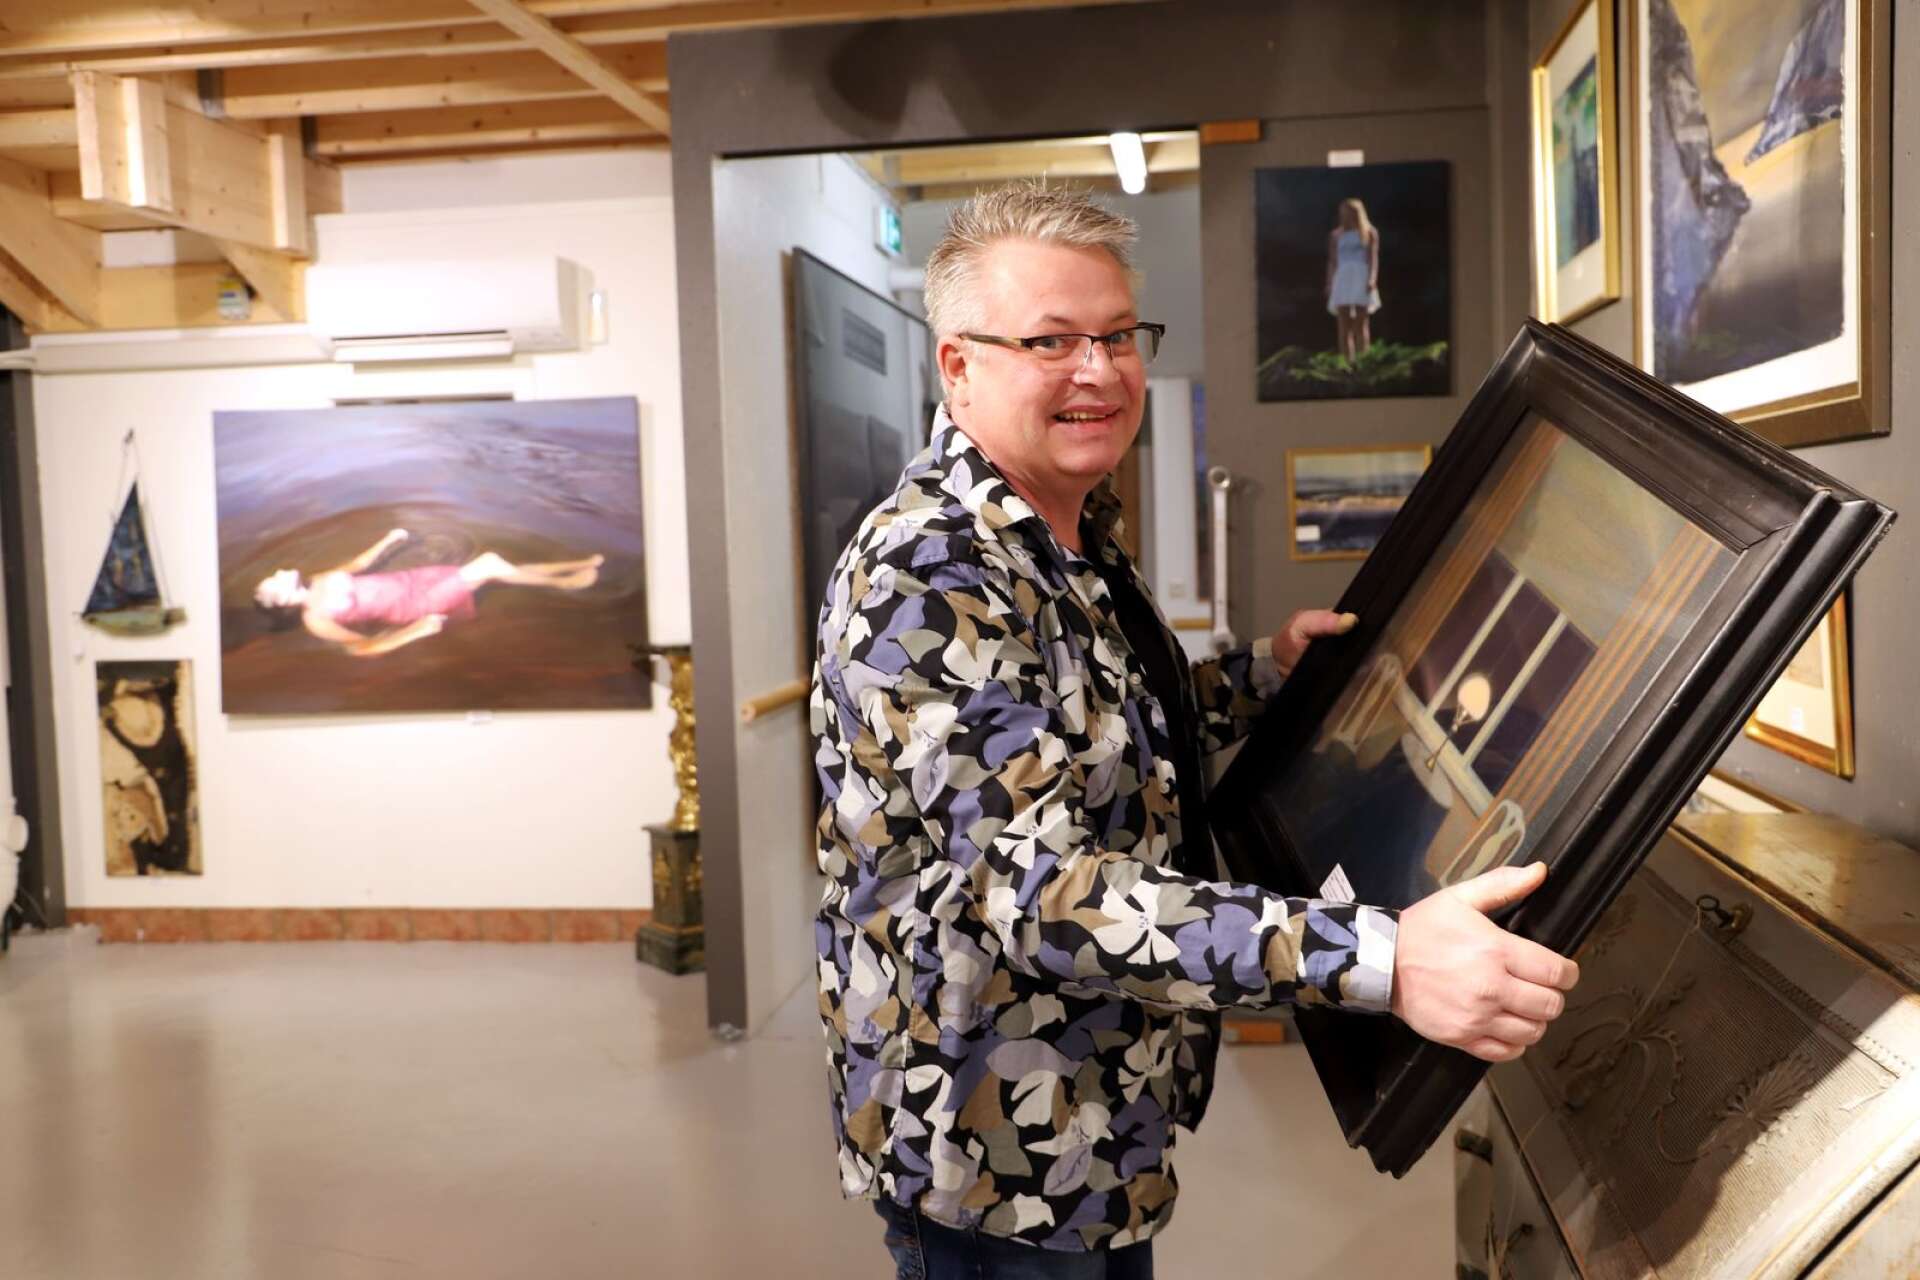 Peter Pettersson på Auktionsverket i Karlstad laddar för kvalitetsauktion där ett verk av värmlänningen Stefan Johansson sticker ut. I bakgrunden ses Karin Broos’ Cirkeln.